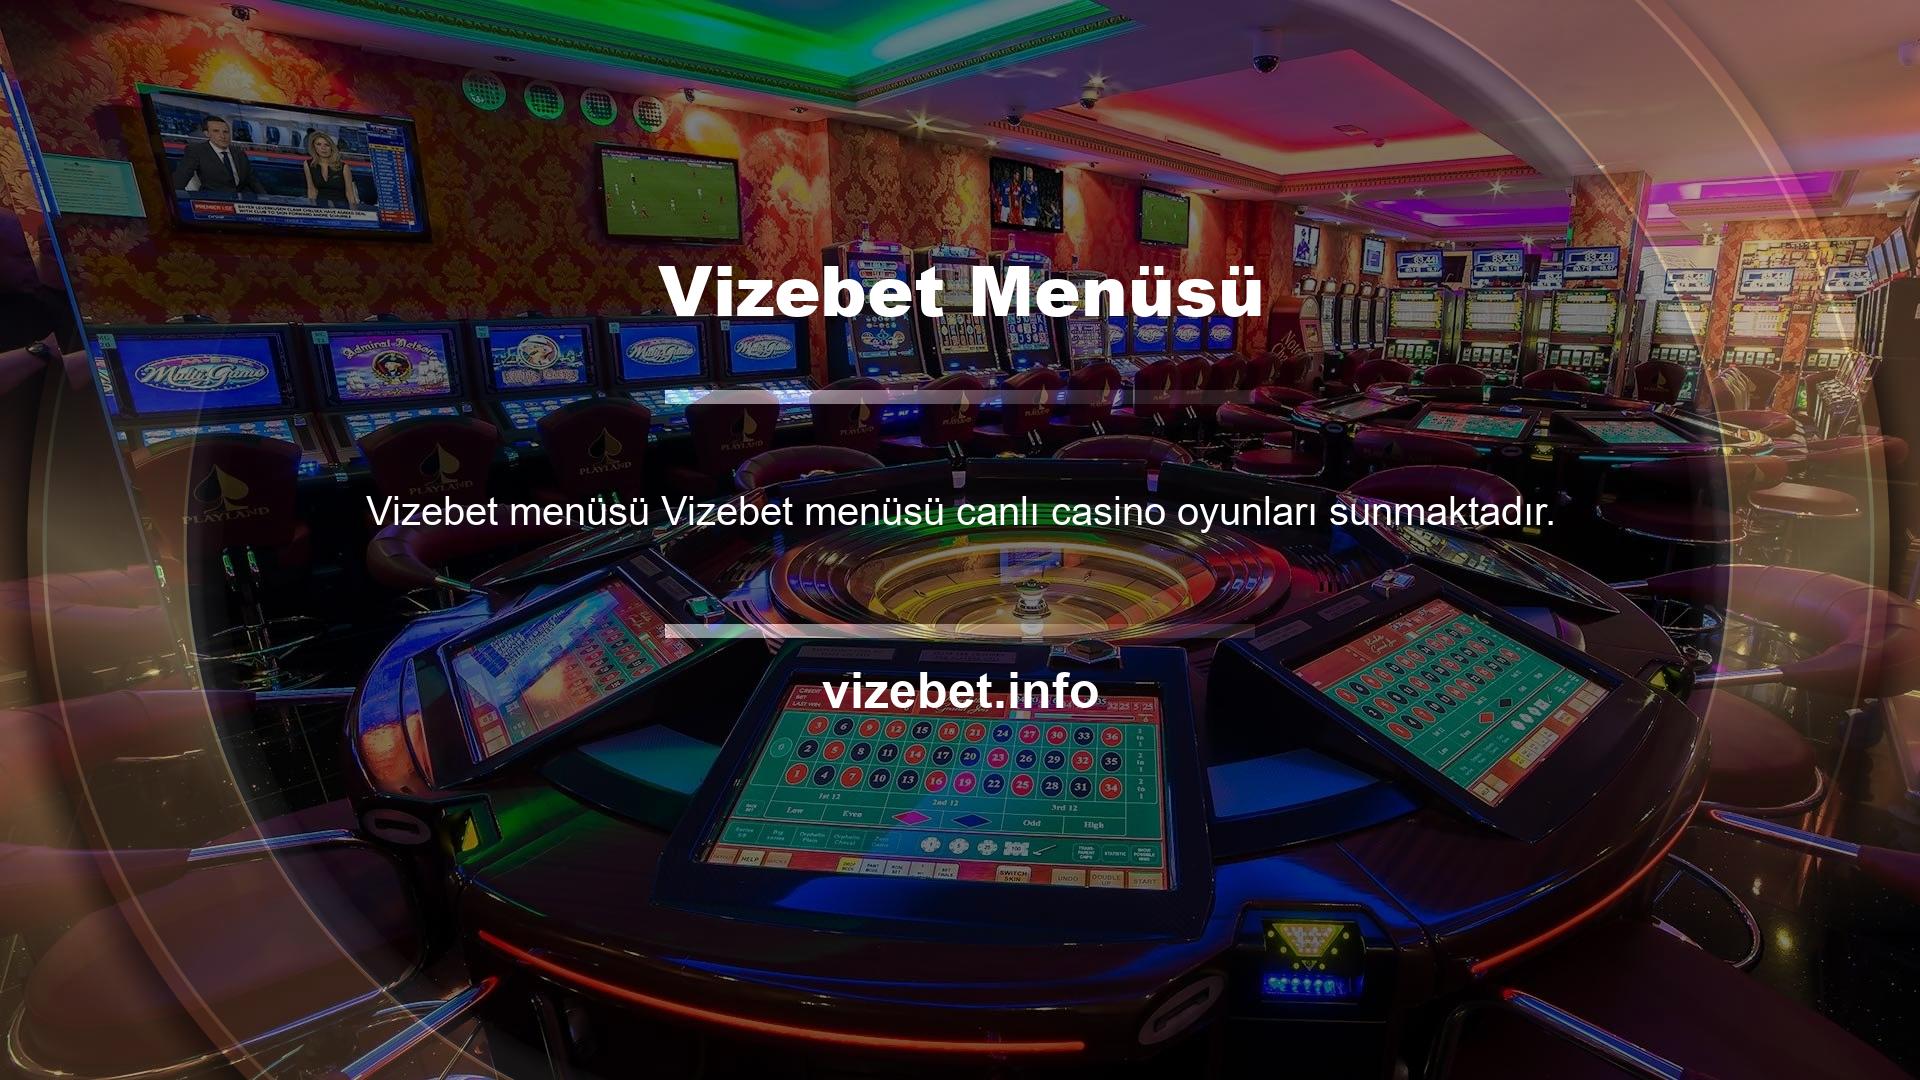 Canlı Casino, gerçek kişilere karşı şans oyunları oynayabileceğiniz gelişmiş bir platformdur